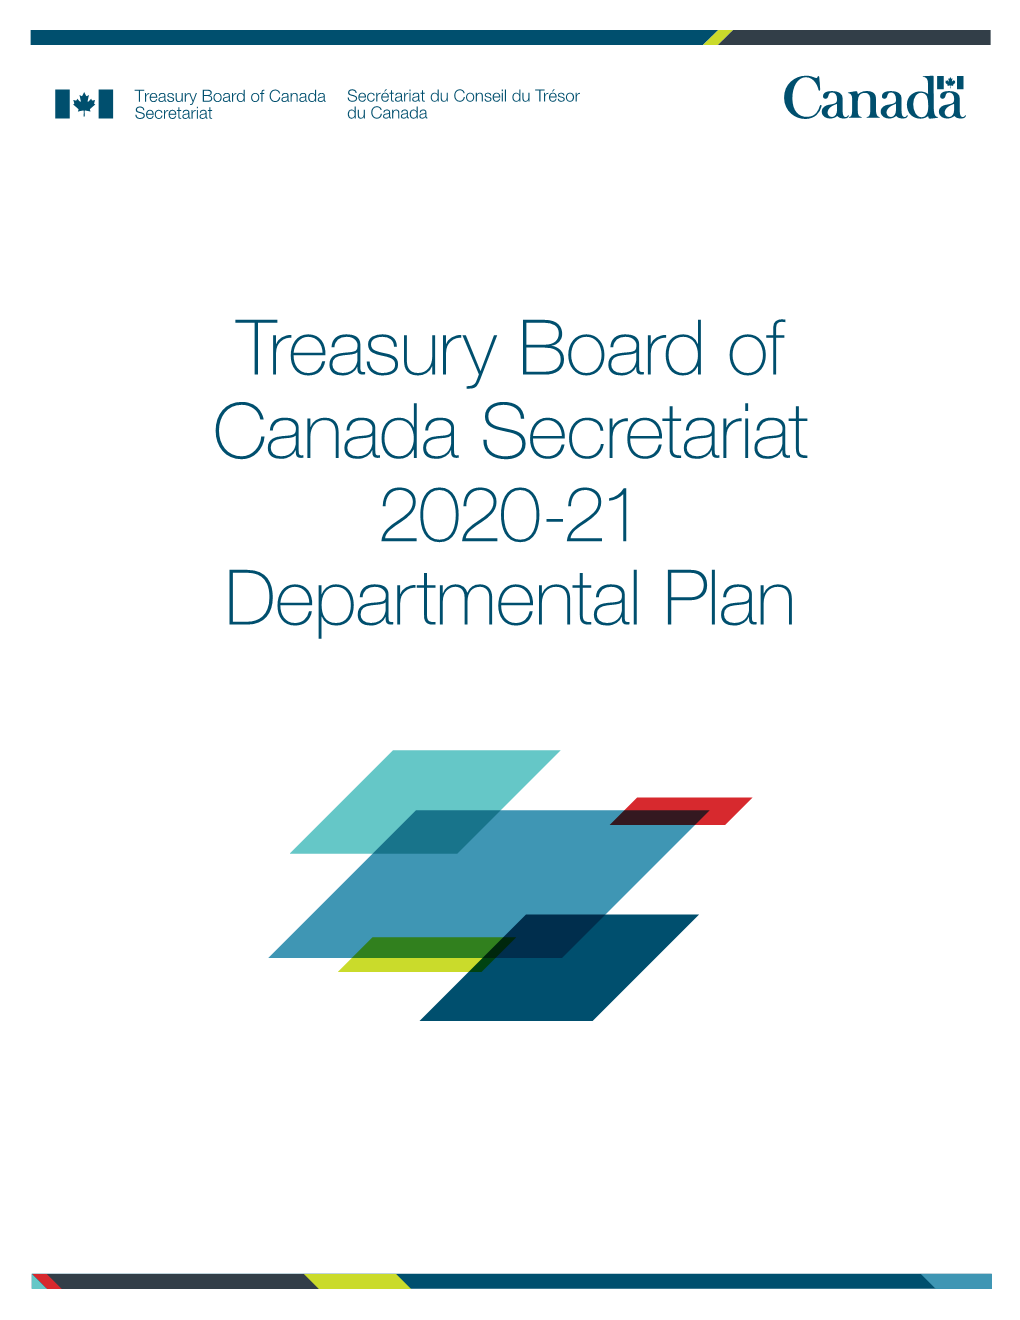 Treasury Board of Canada Secretariat 2020-21 Departmental Plan